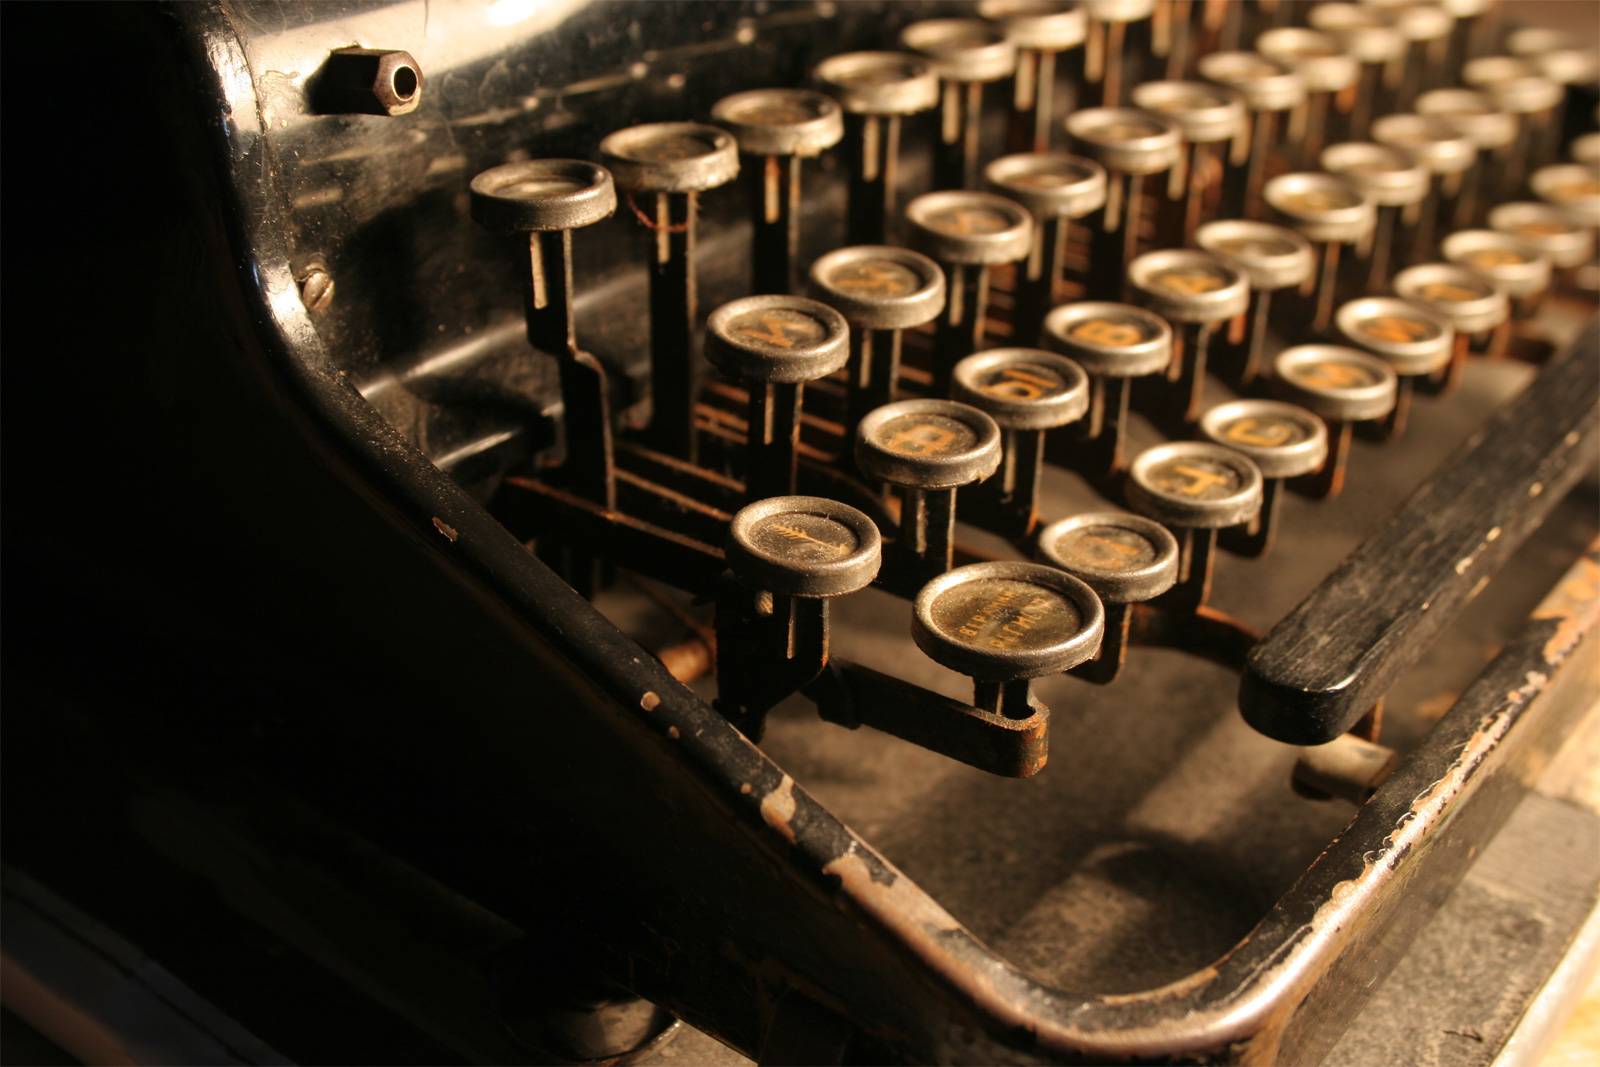 Vintage keyboard of typewriter